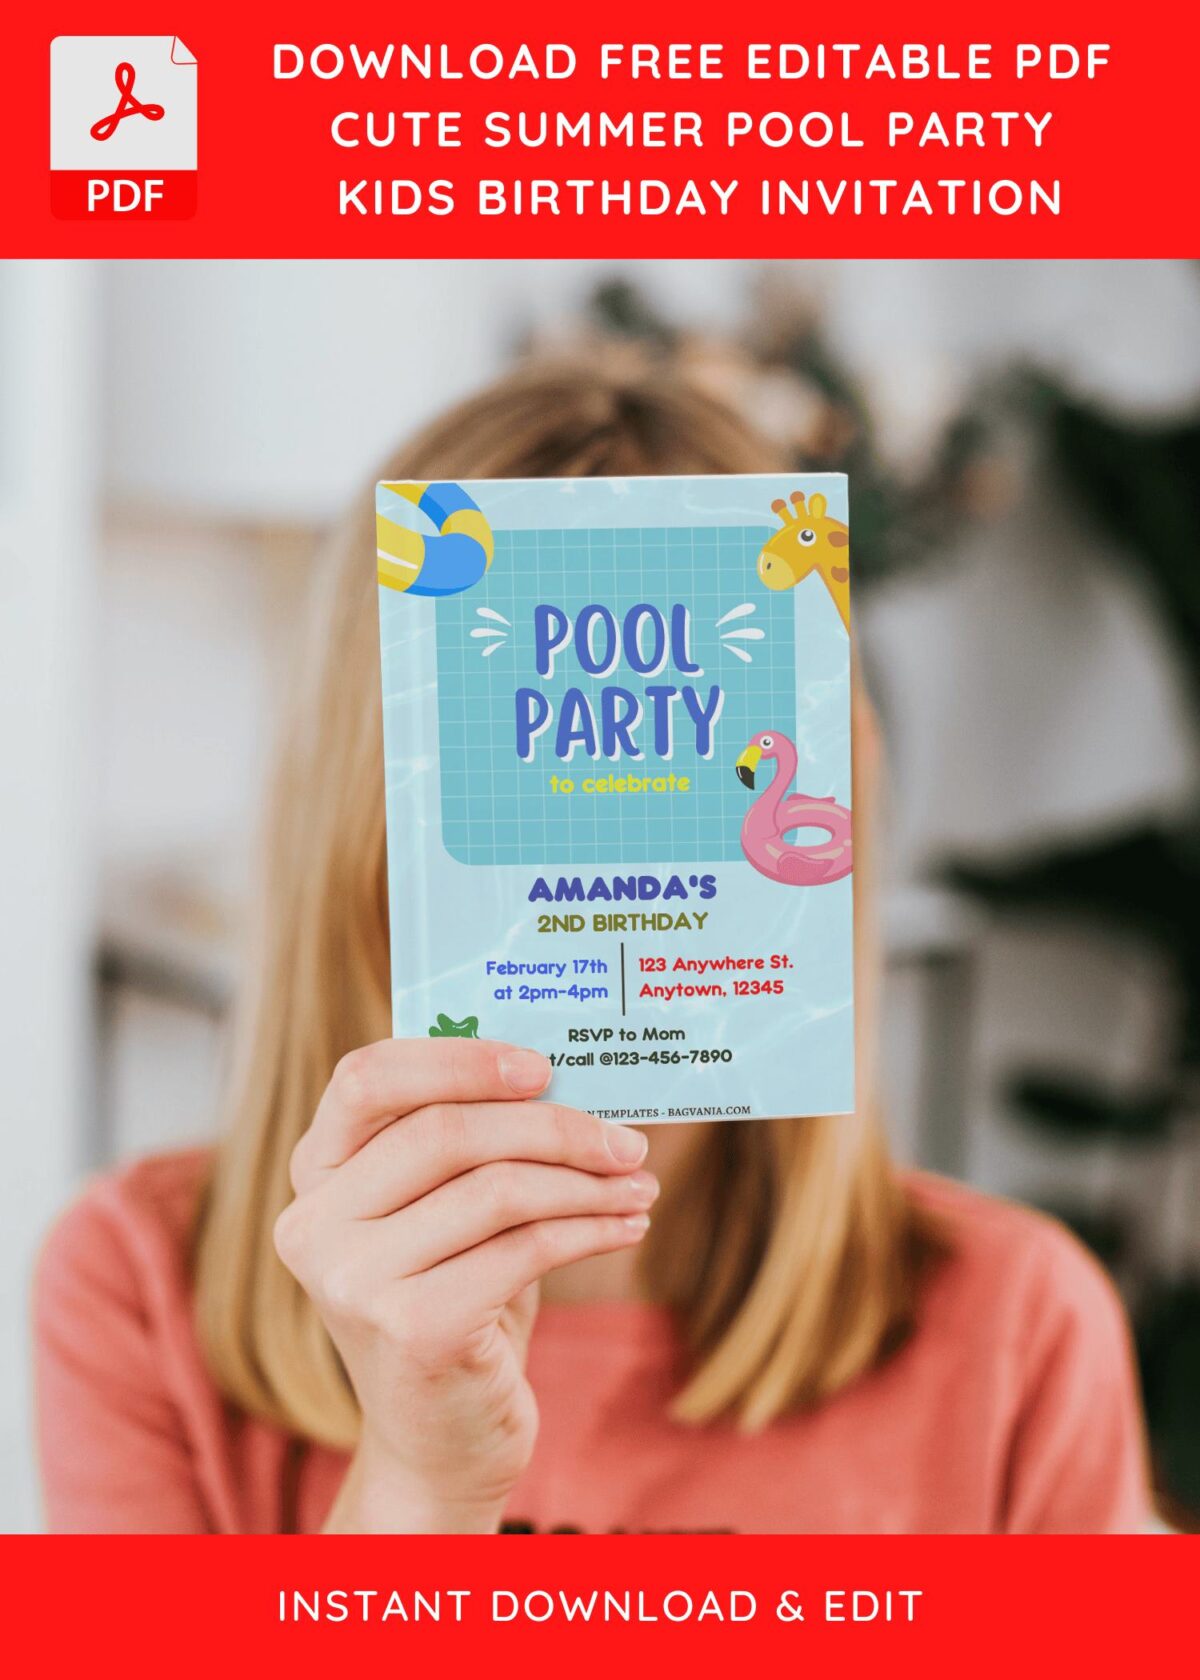 (Free Editable PDF) Adorable Cartoon Pool Kids Birthday Invitation Templates J